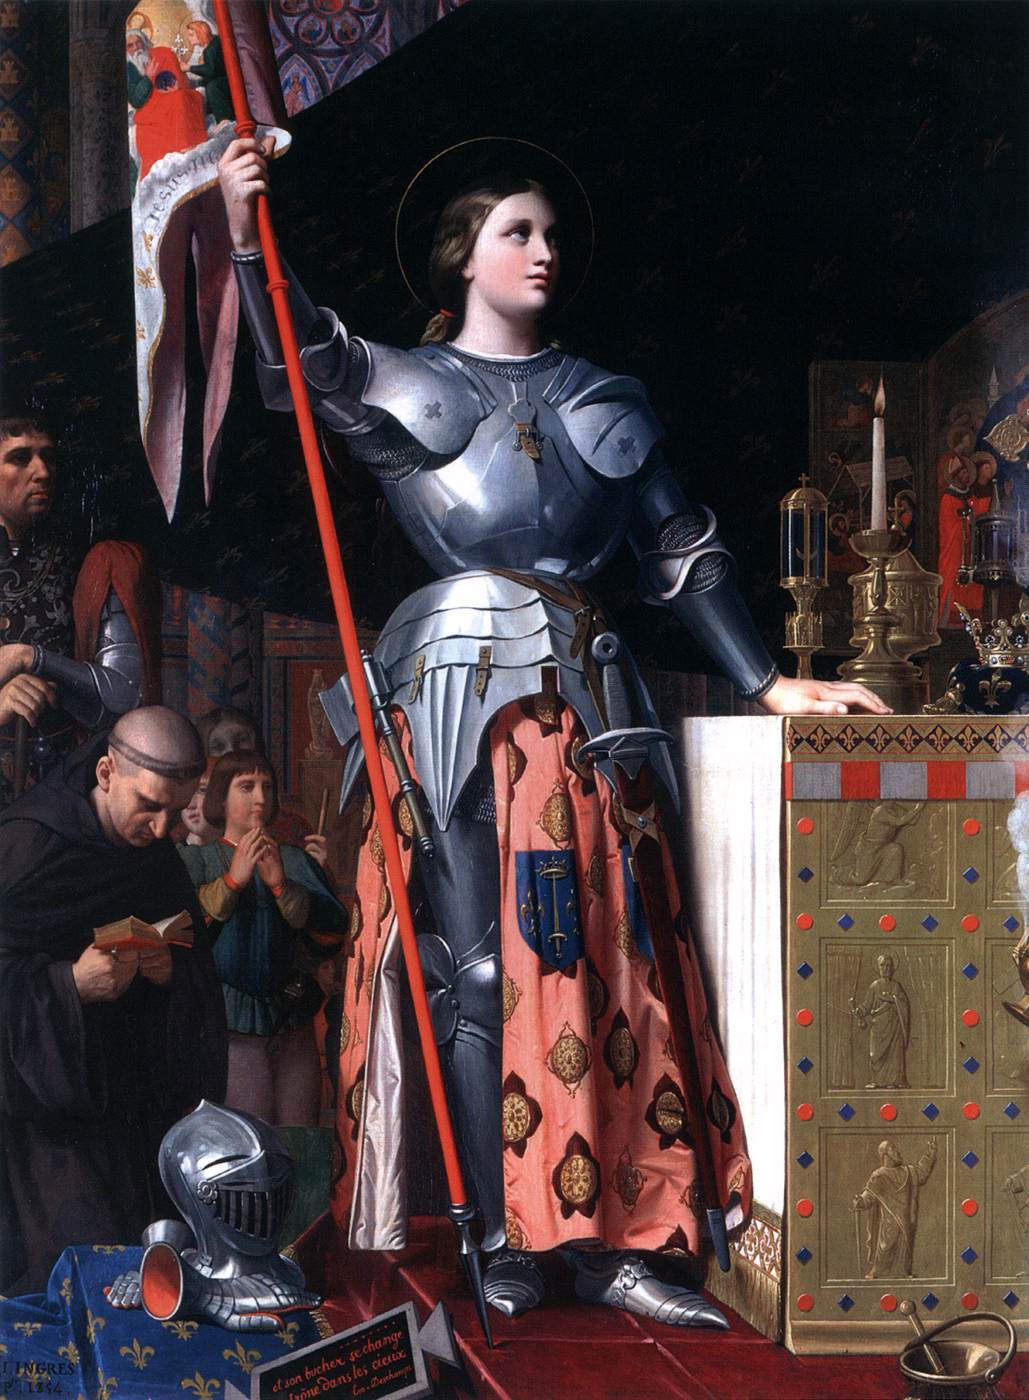 Joan de Arco dans le couronnement de Carlos VII dans la cathédrale Reims